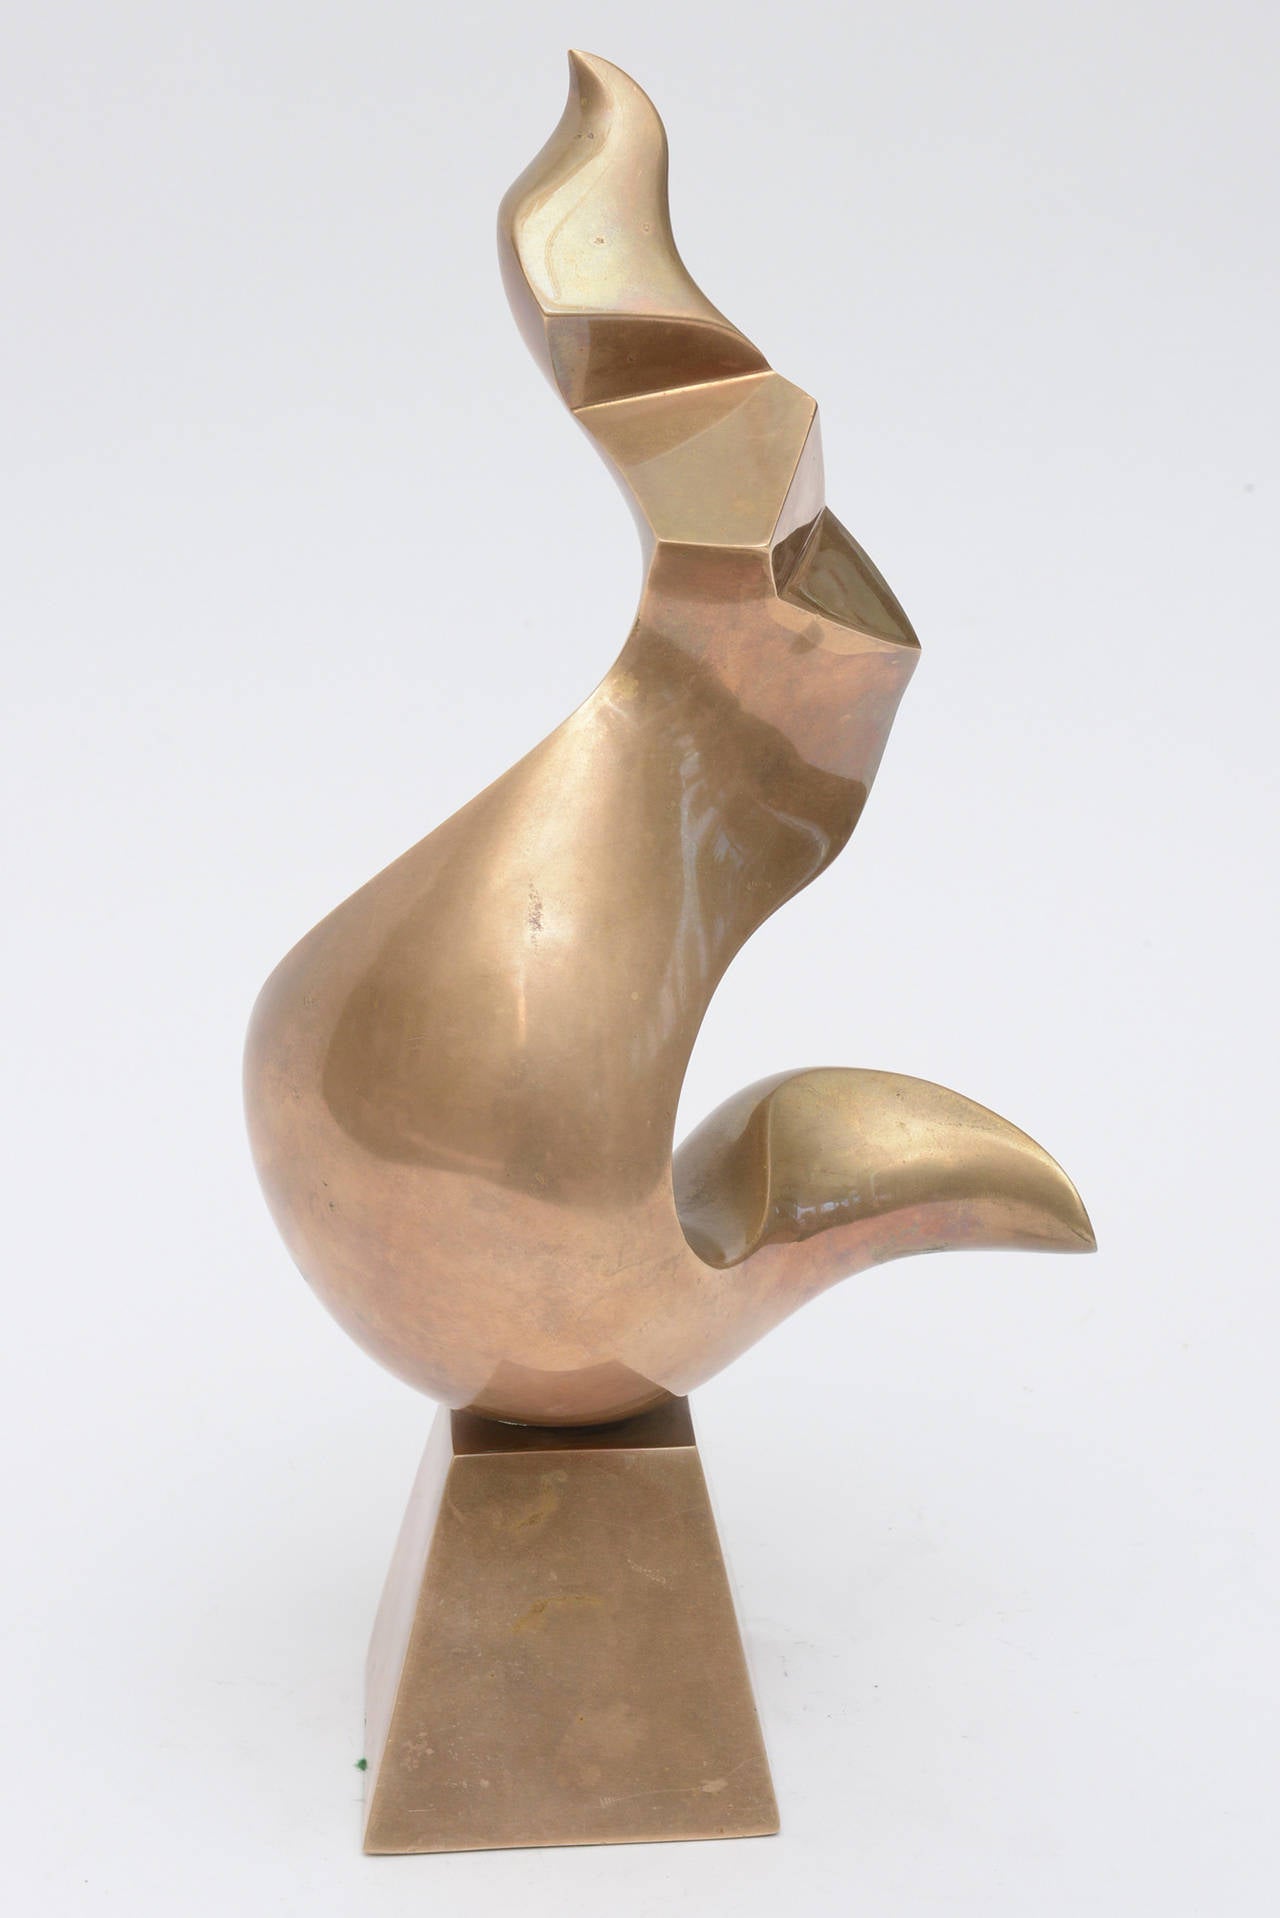 Cette sensuelle et étonnante sculpture en bronze en petite édition est l'œuvre du célèbre et prolifique sculpteur canadien Antonio Grediaga Kieff : Antonio Grediaga Kieff. Elle est abstraite et change de forme à chaque tour d'angle. La taille de